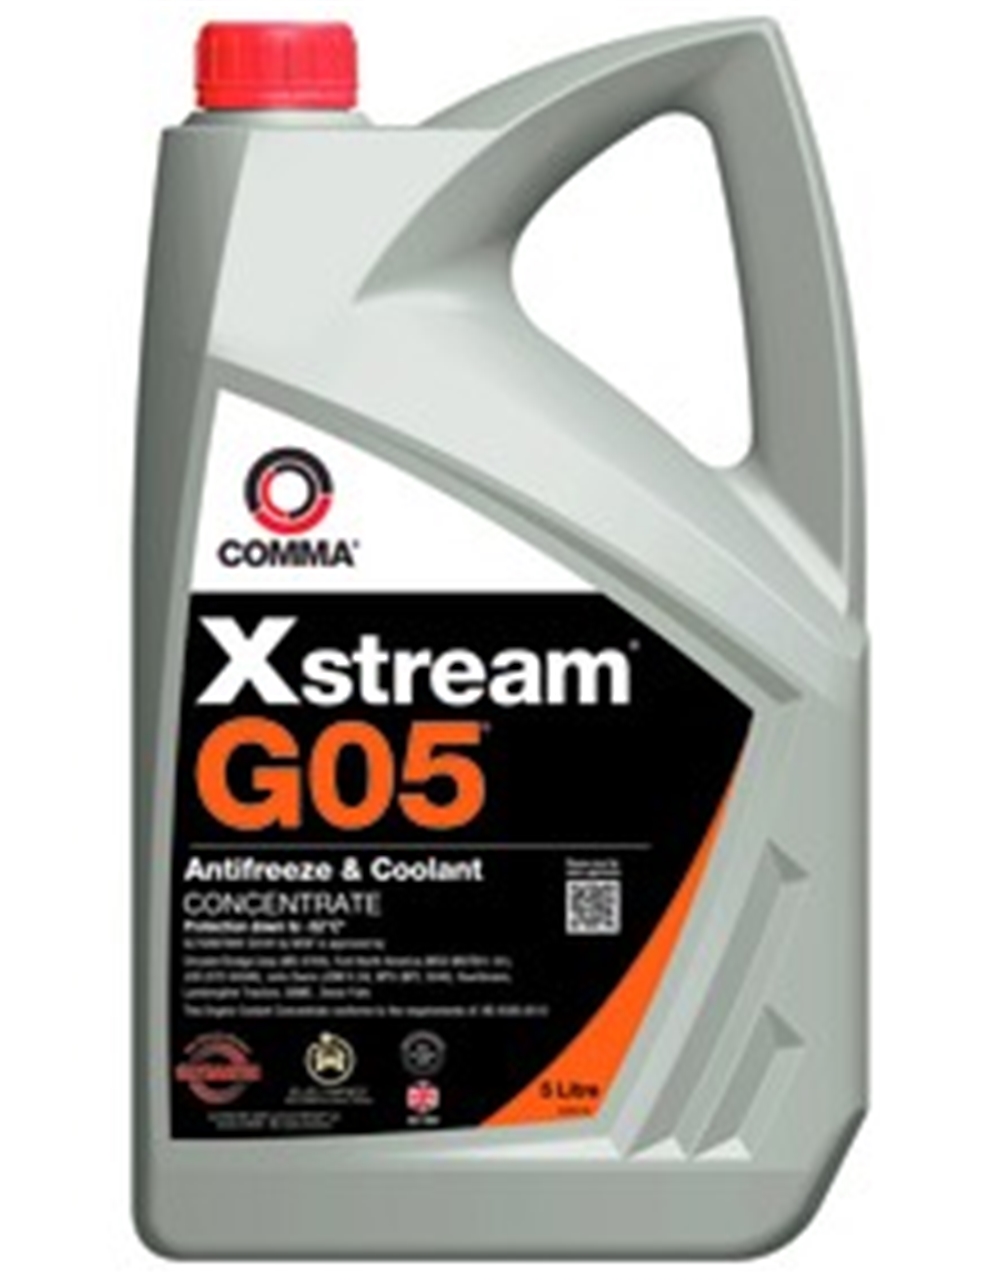 Xstream G05 (Glysantin G05) 5л Концентрат